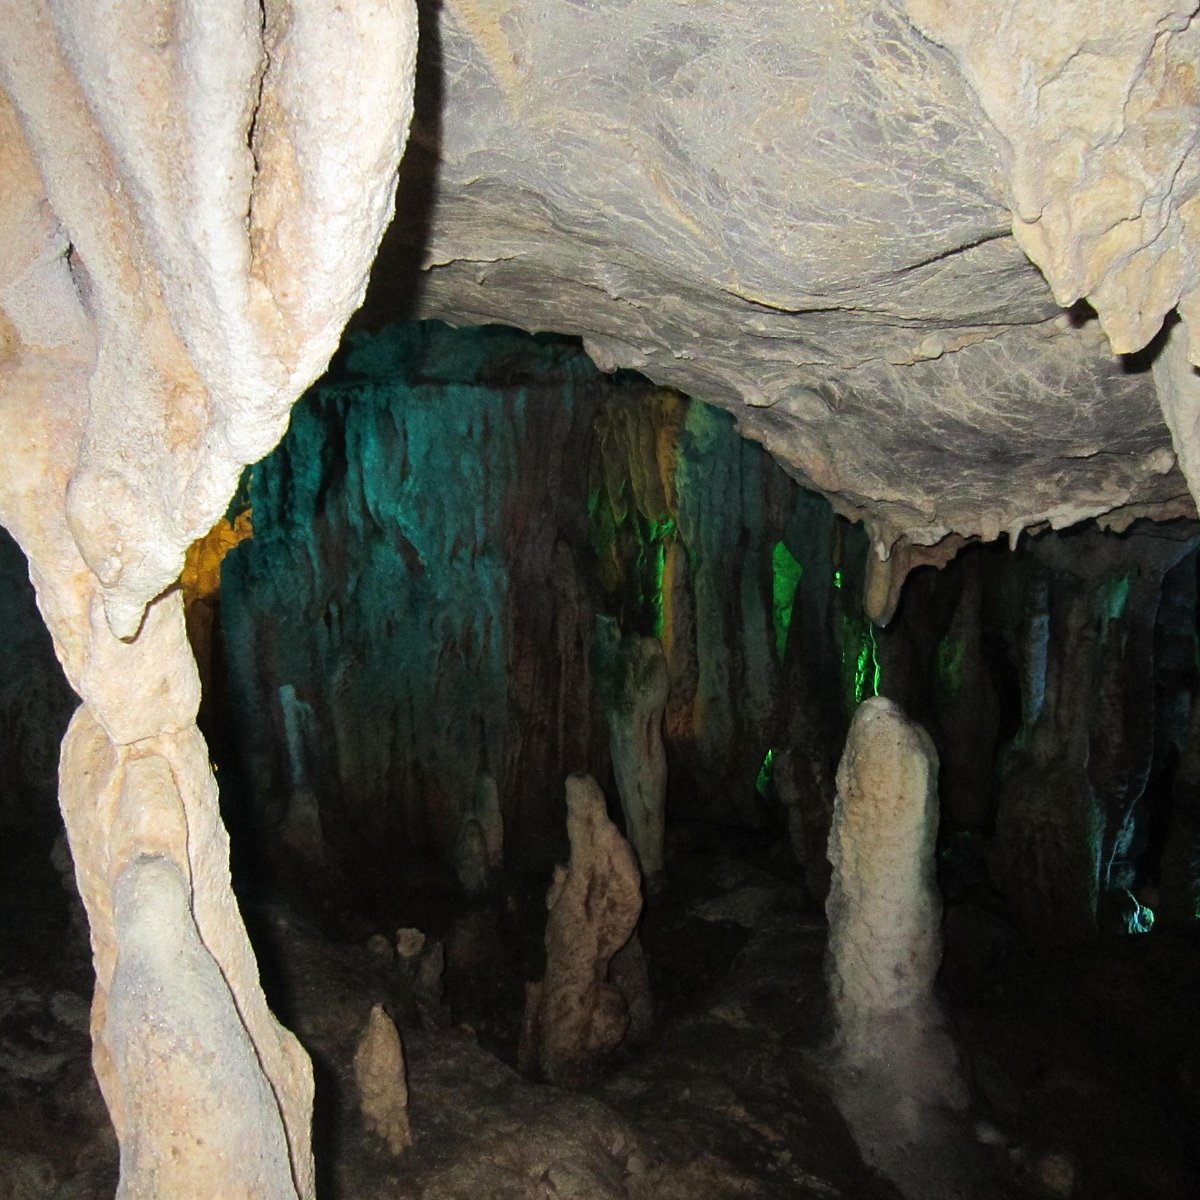 Ryogado Cave